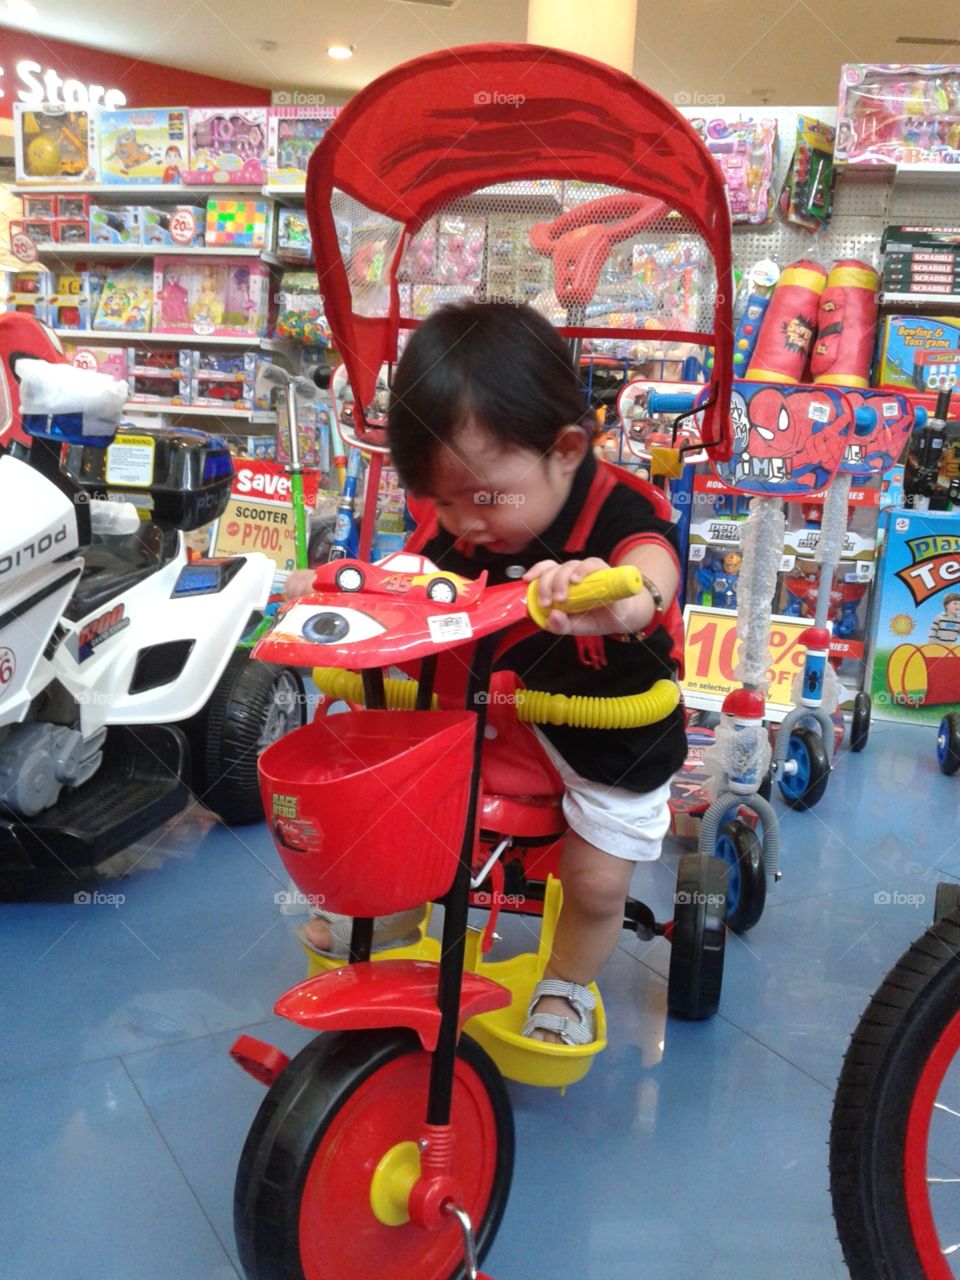 Baby tricyle bike